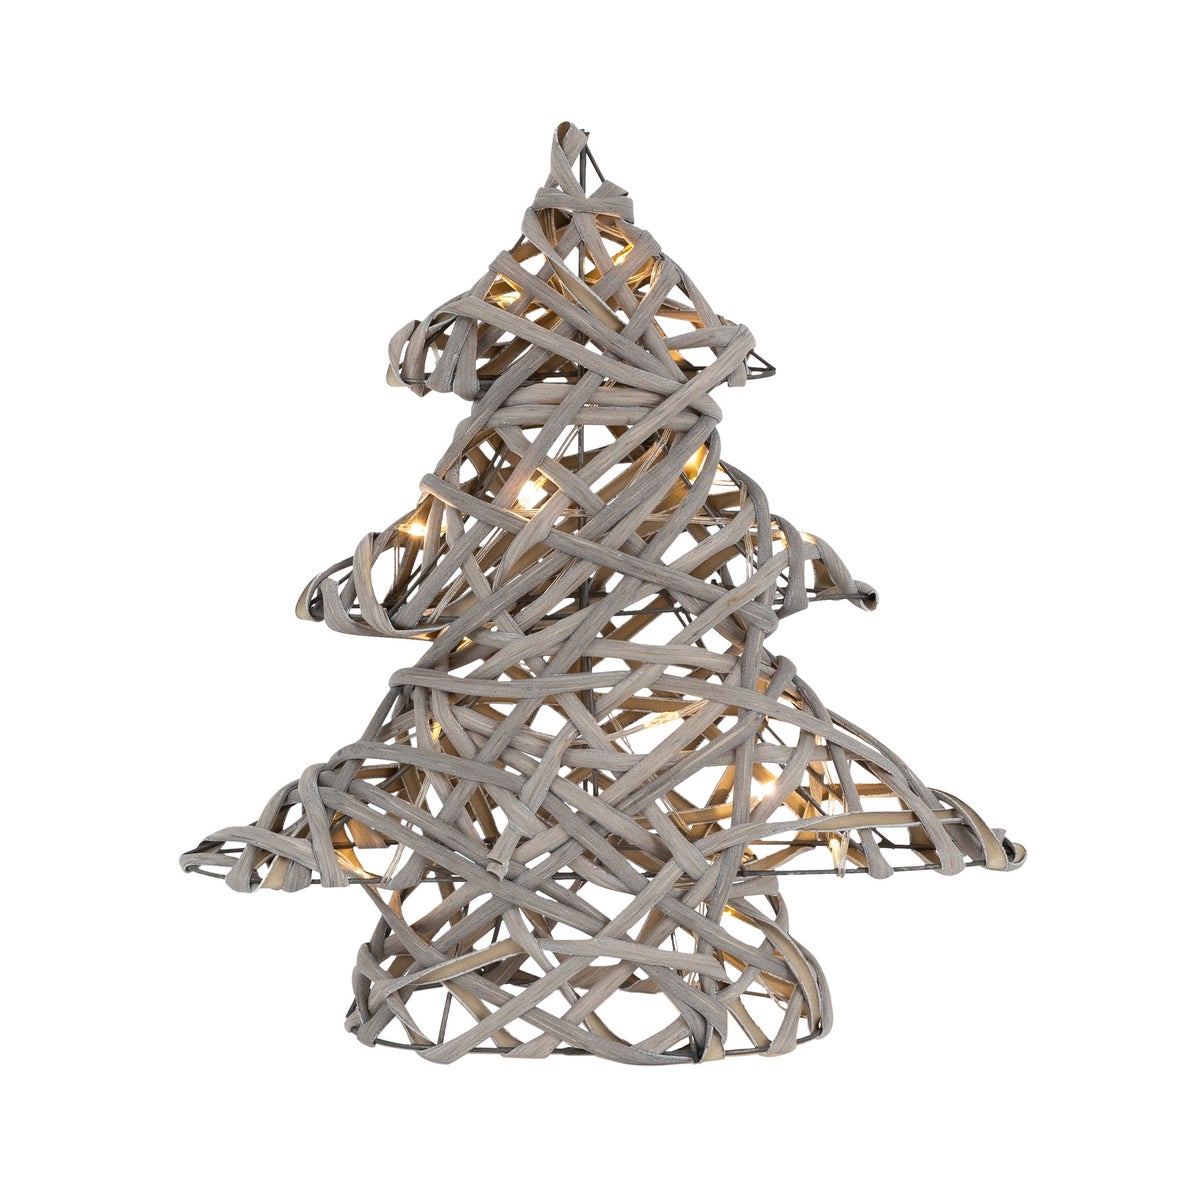 ECD Germany LED Deko Baum Weihnachten mit 15 warmweißen LEDs, 30 cm hoch, Rattan-Metall, Grau, Weihnachtsbaum mit Beleuchtung &amp; Timer, batteriebetrieben, Lichterbaum Tannenbaum stehend Weihnachtsdeko